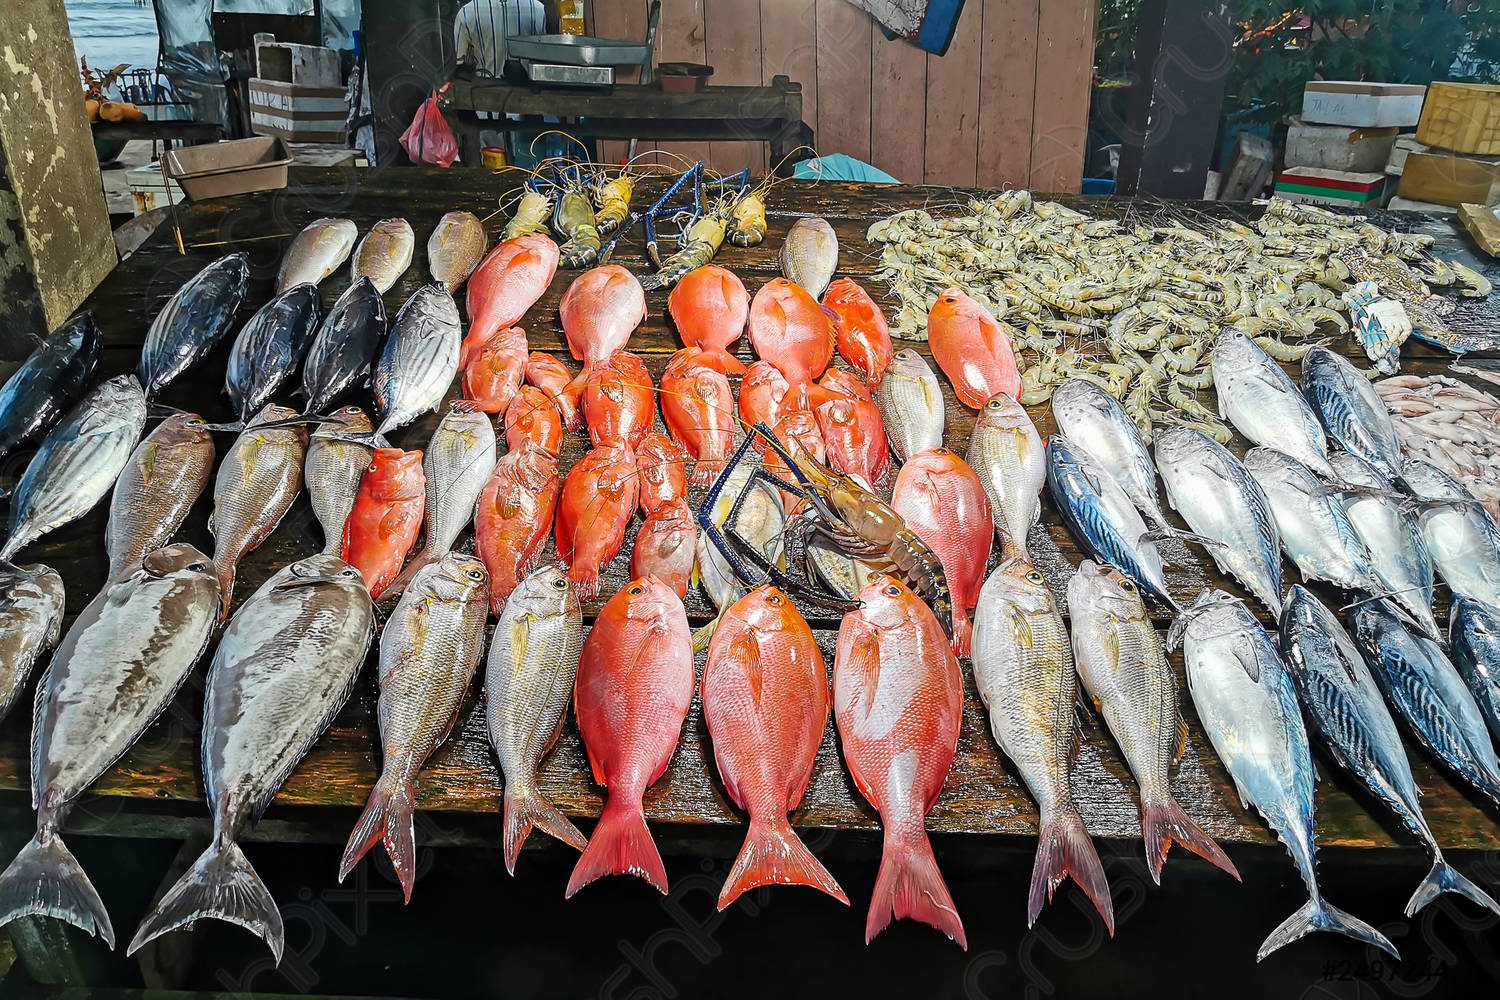 سعر الأسماك والمأكولات البحرية 